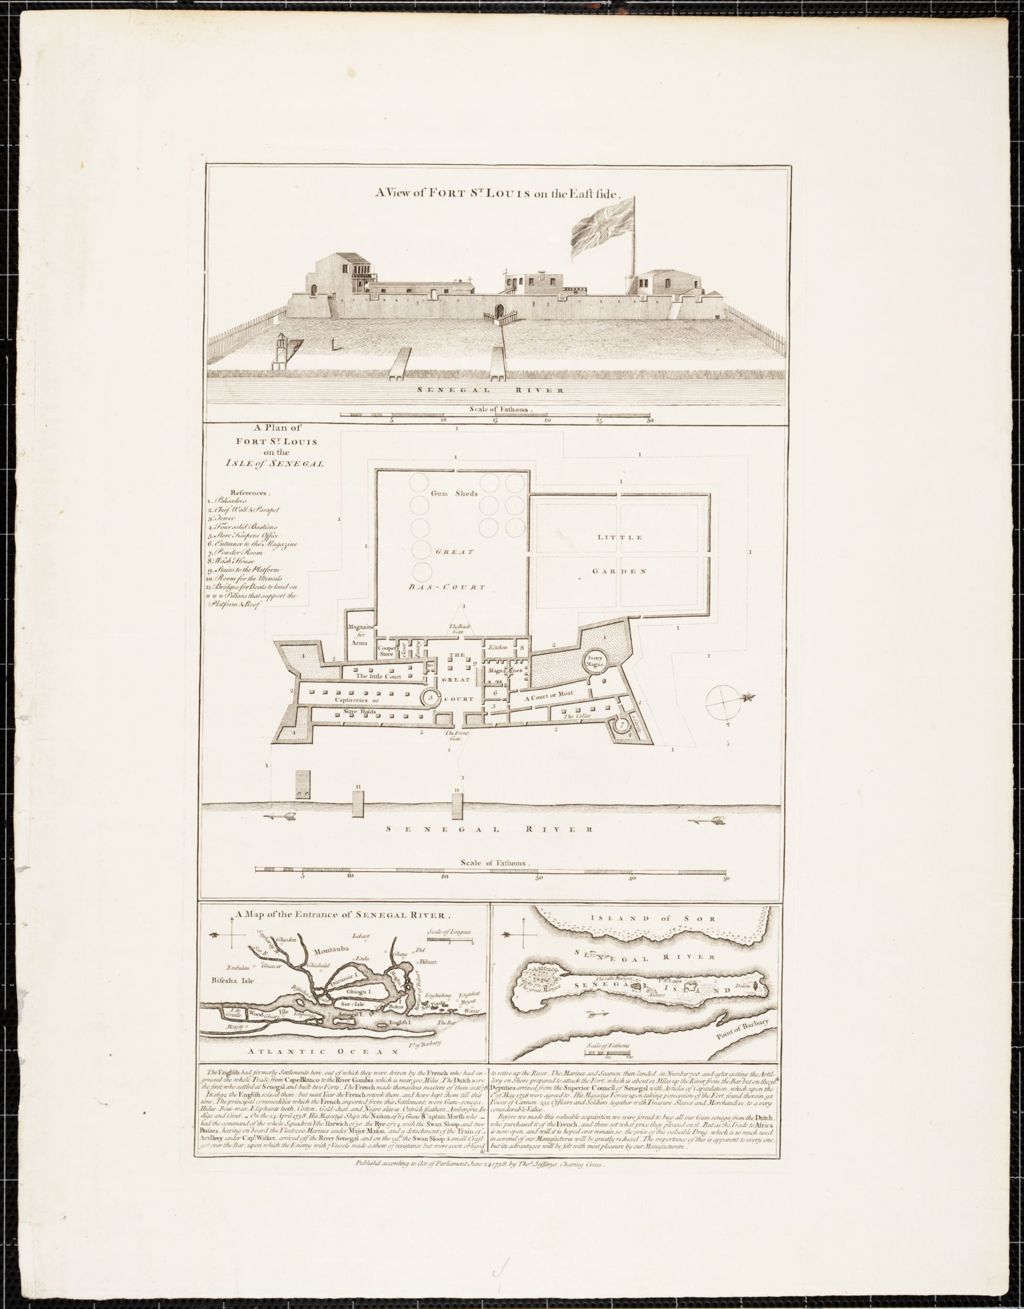 Senegal Island, Fort St. Louis / Thos. Jefferys (1758)